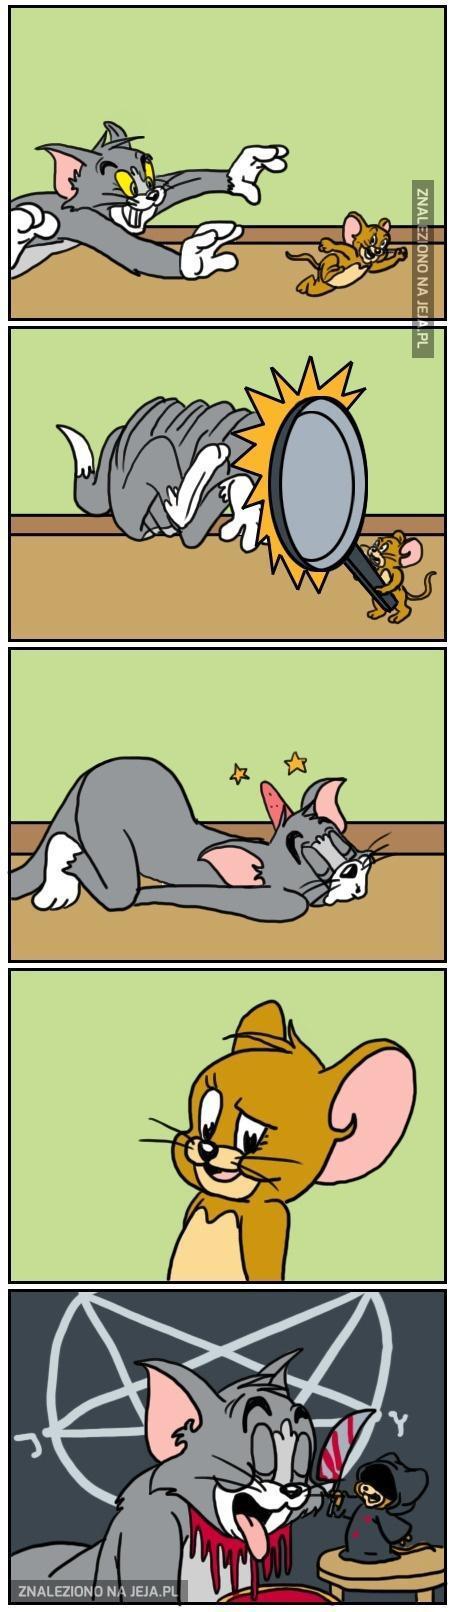 Jak skończył się Tom i Jerry